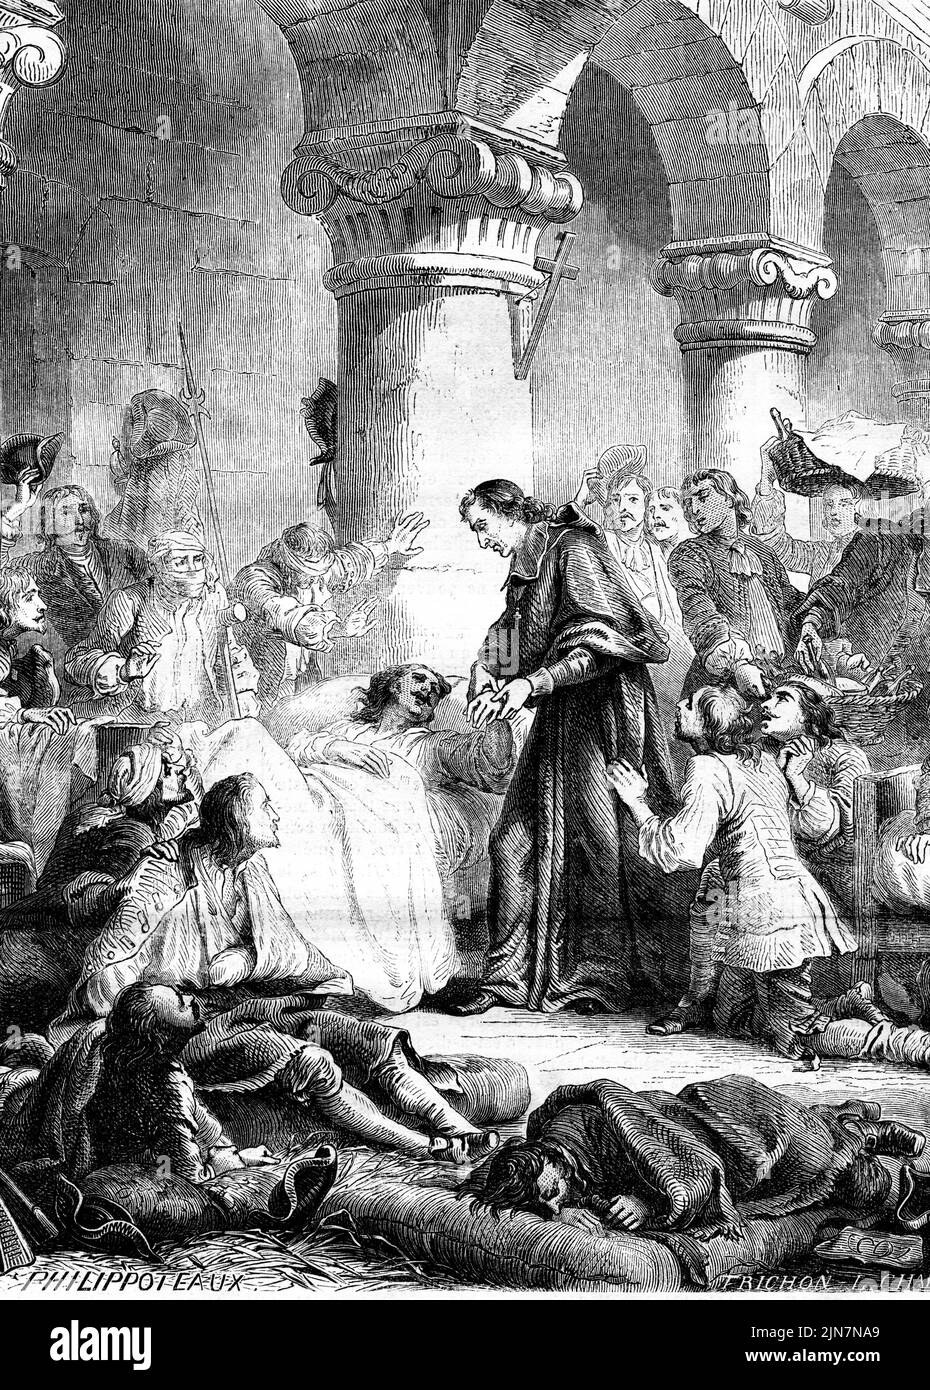 Incisione di Mons. Francis de Salignac de la Mothe-Fénelon che tende ai feriti francesi dopo la battaglia di Malplaquet. La battaglia ebbe luogo il 11 settembre 1709 durante la guerra di successione spagnola tra un esercito francese comandato dal duca di Villars e una forza della Grande Alleanza sotto il duca di Marlborough. Foto Stock